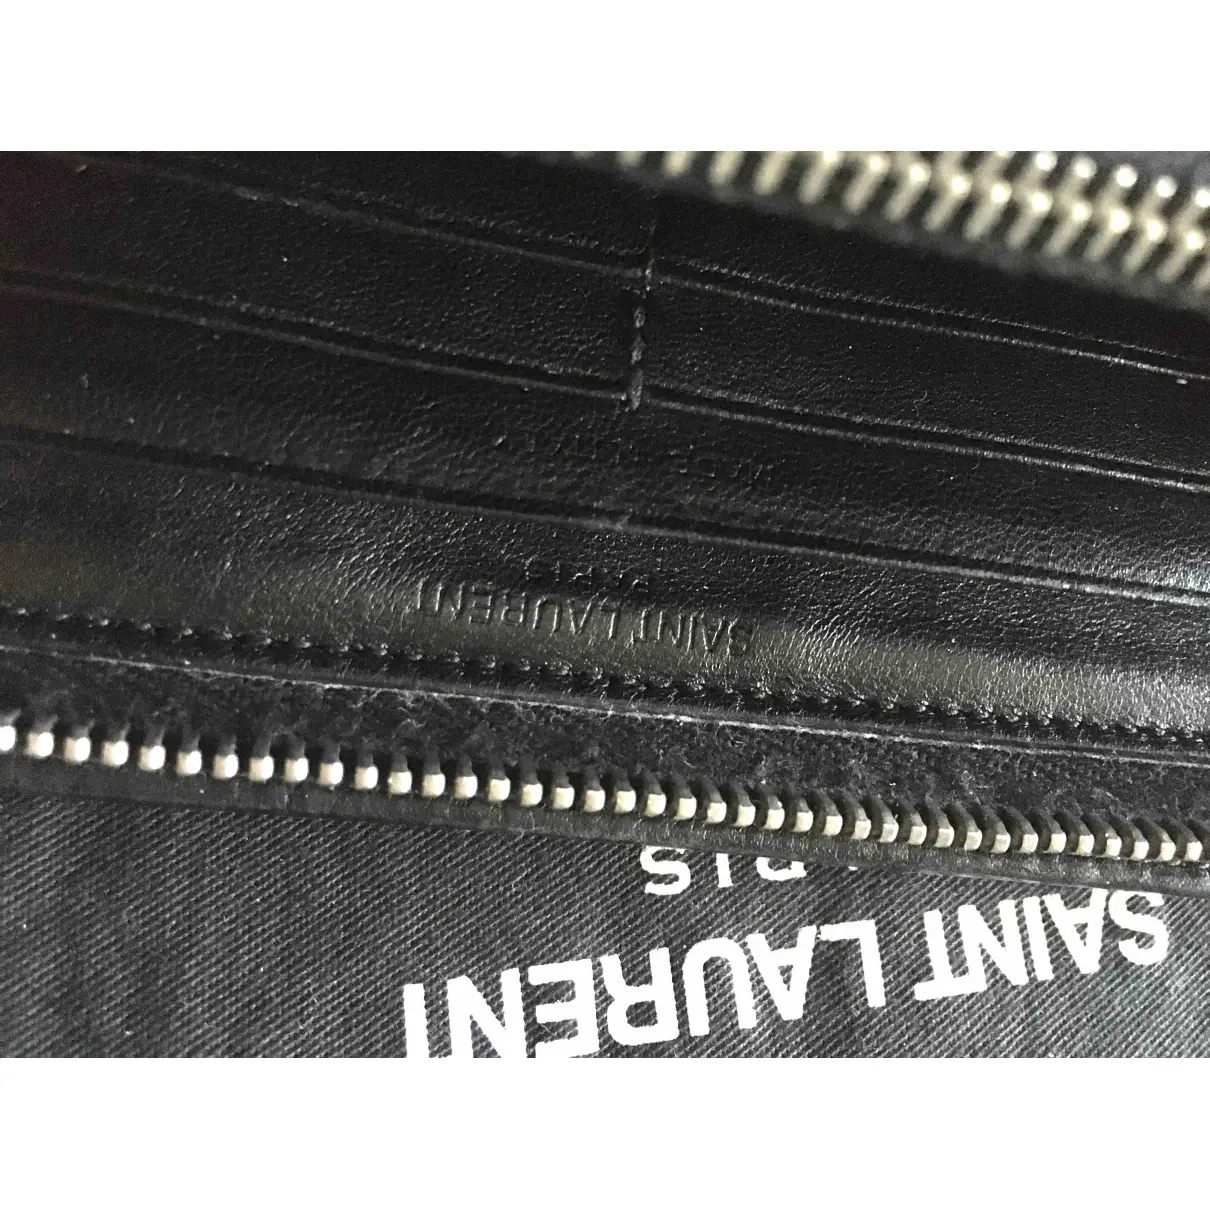 Rive Gauche leather wallet Saint Laurent